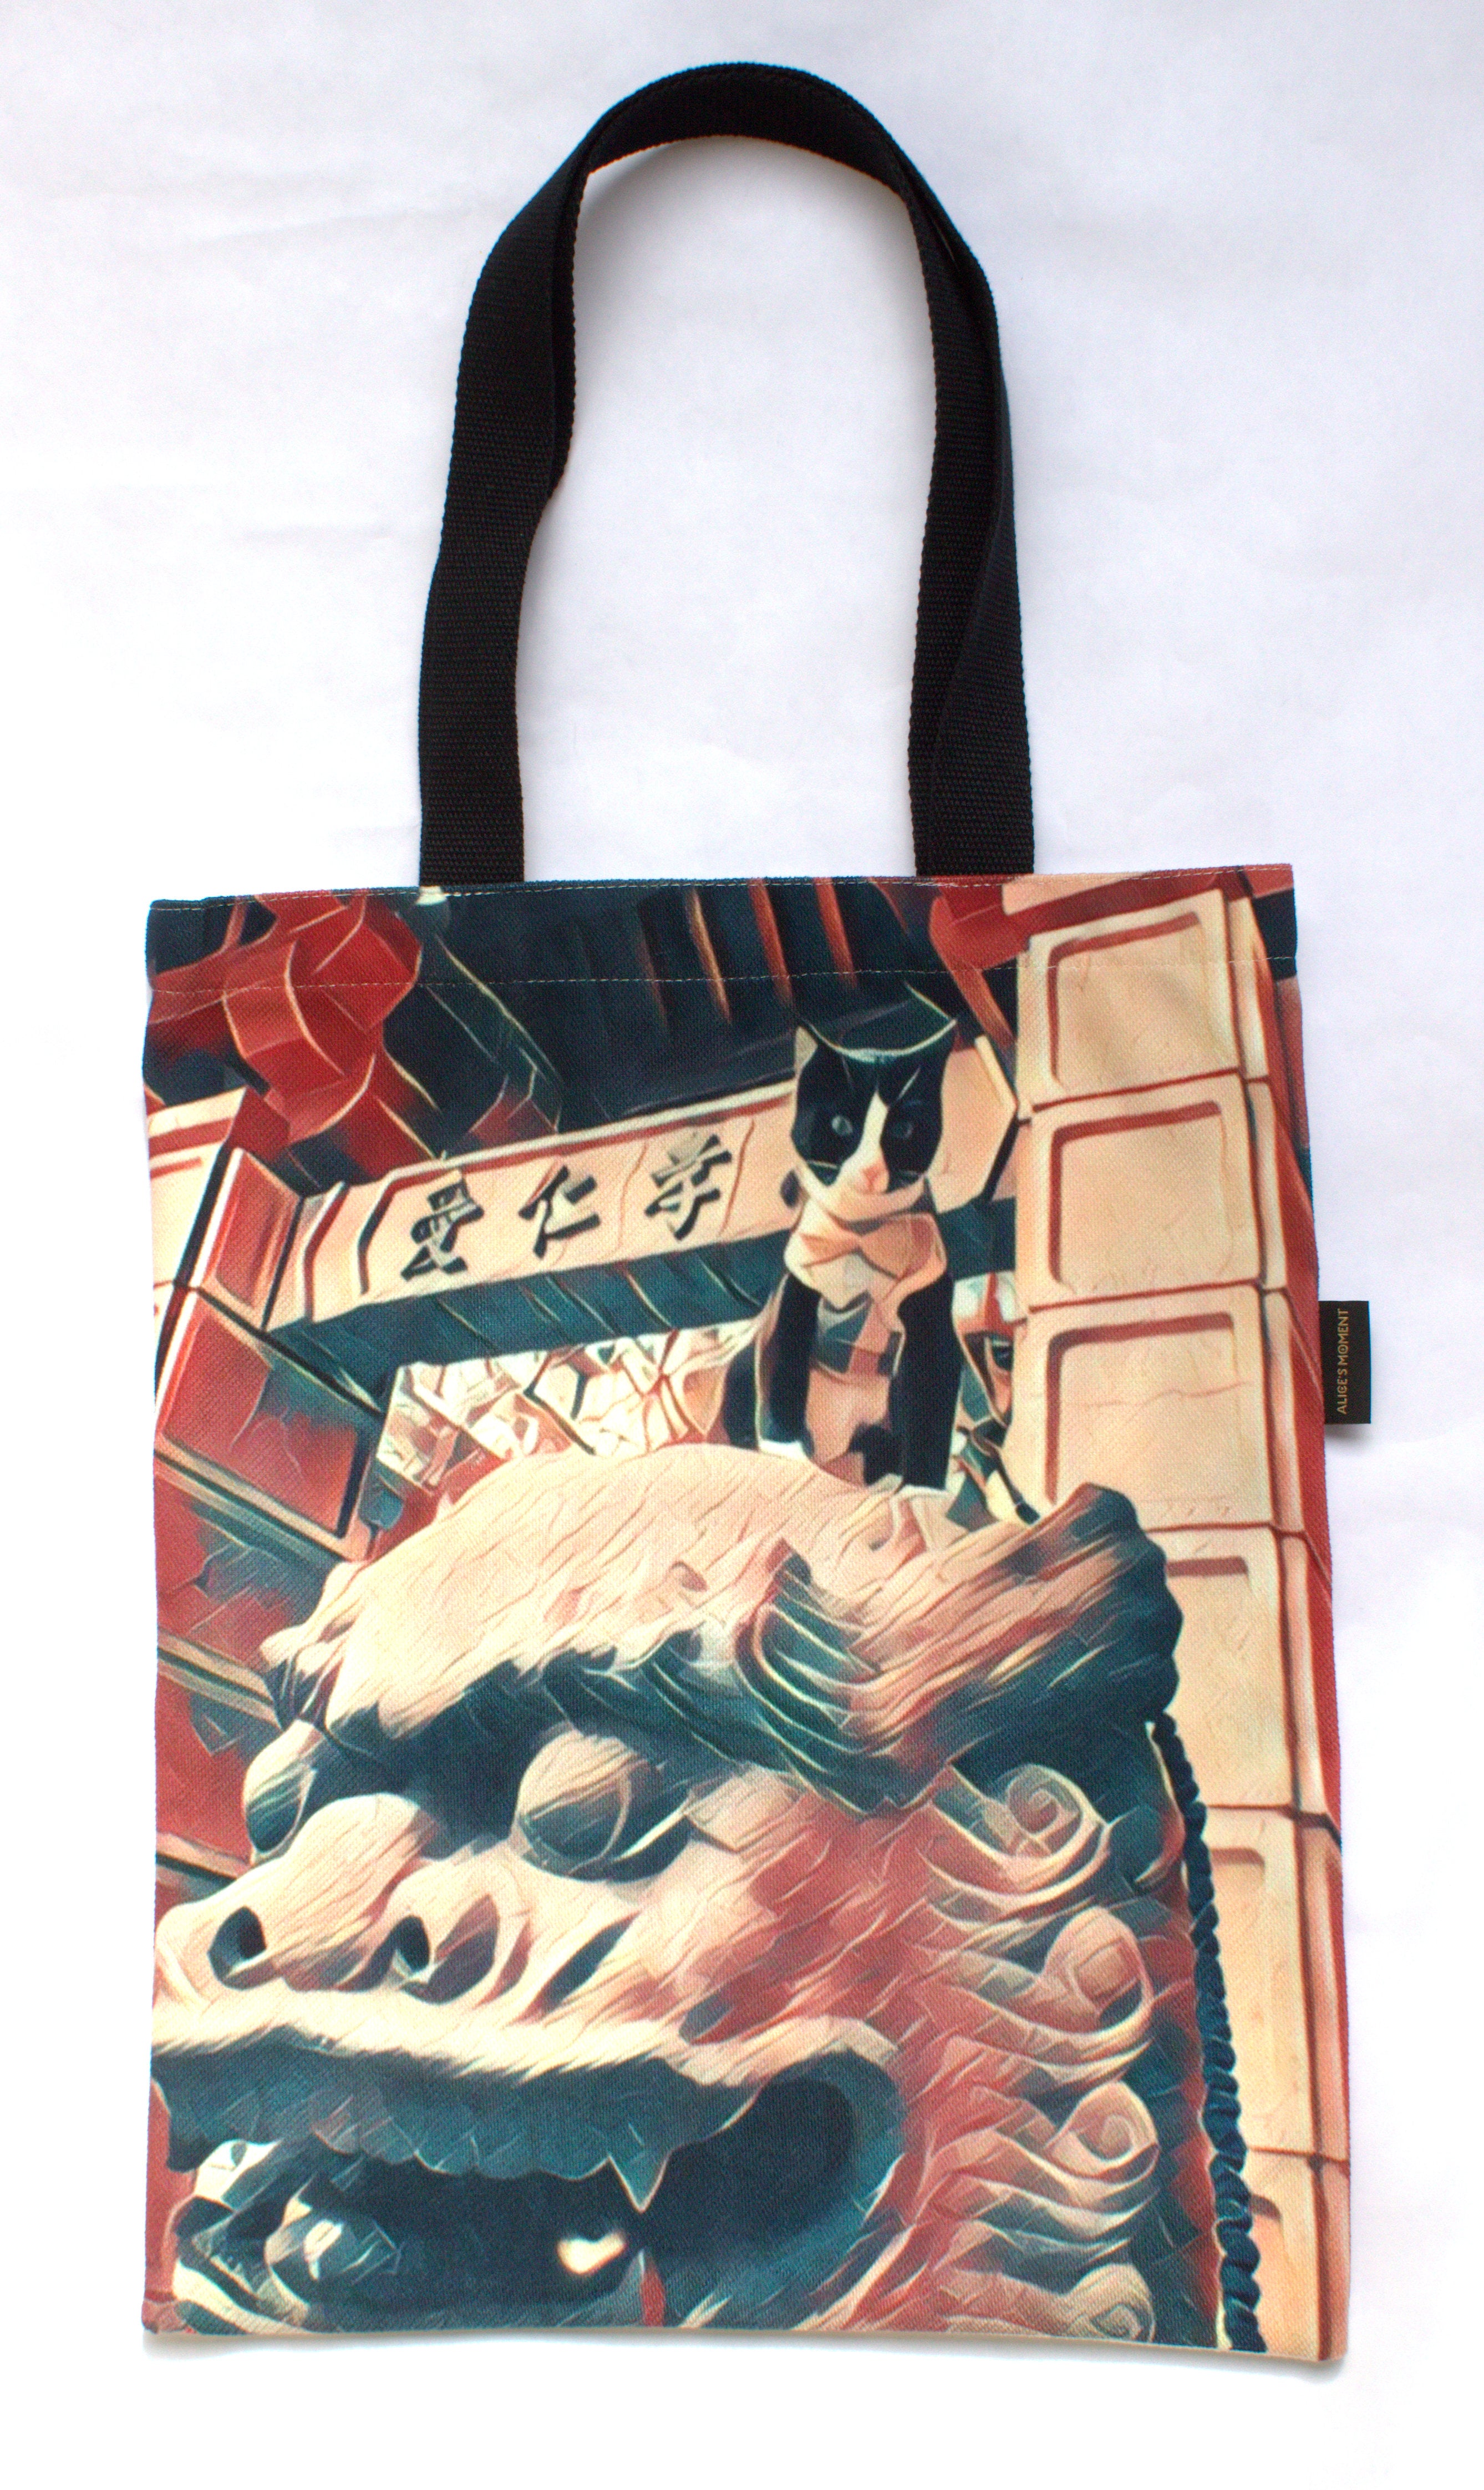 Chinatown Storytime, I Got A Replica Bag